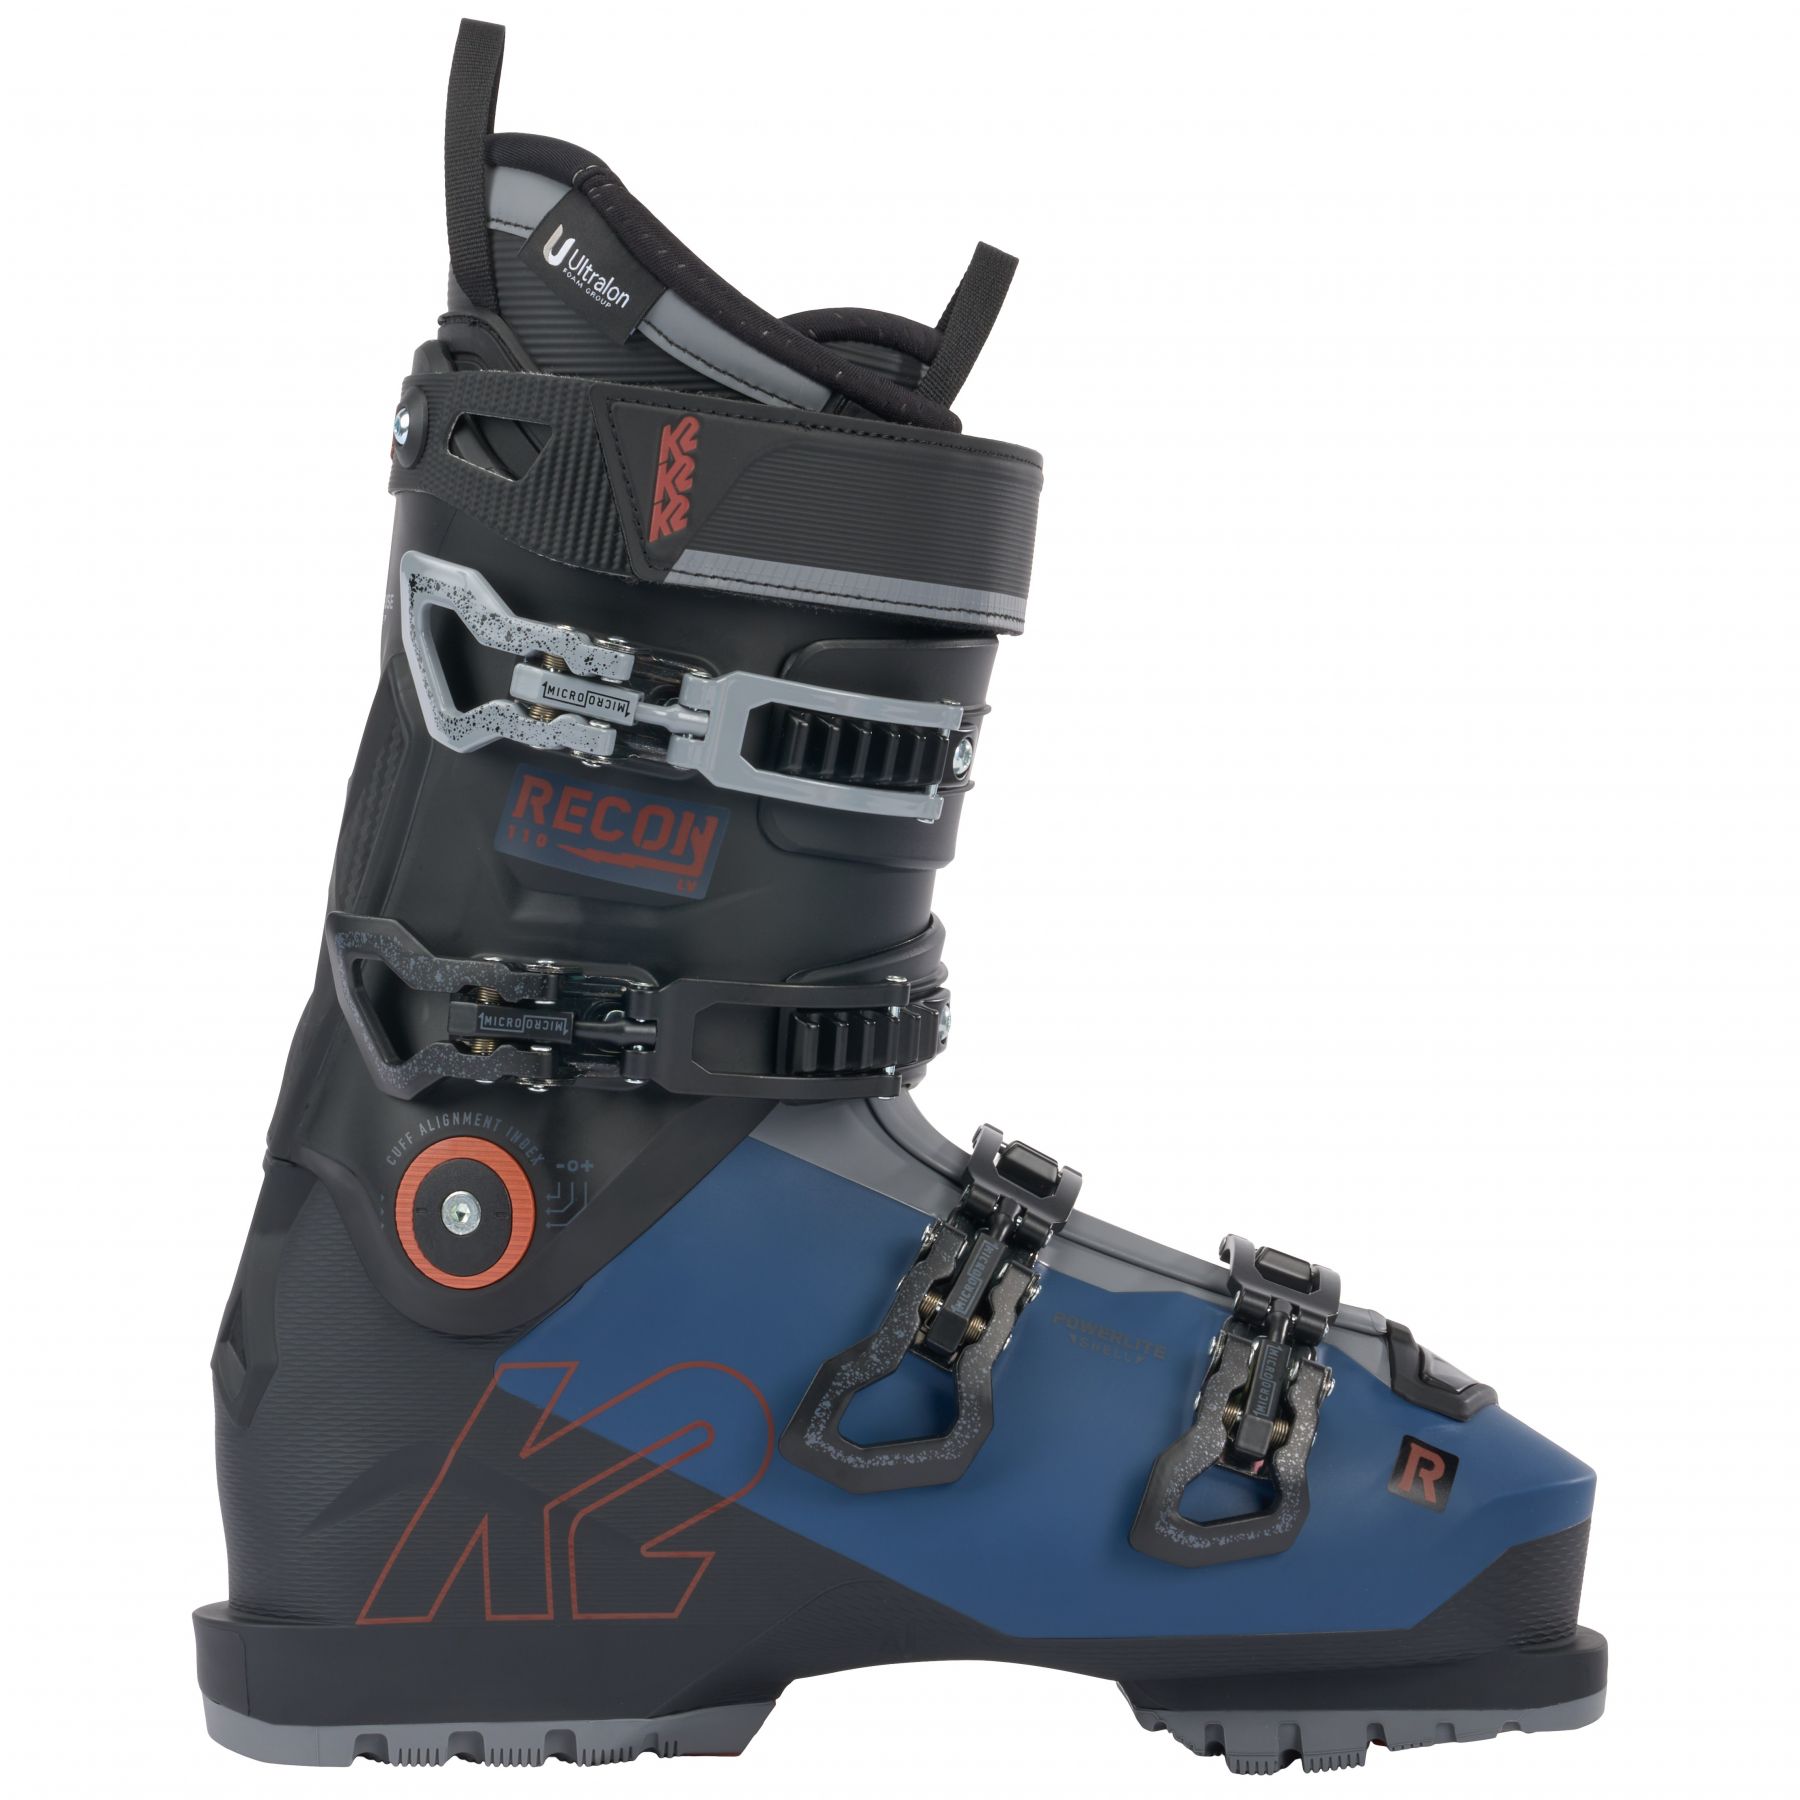 Billede af K2 Recon 110 LV, skistøvler, herre, mørkeblå/sort